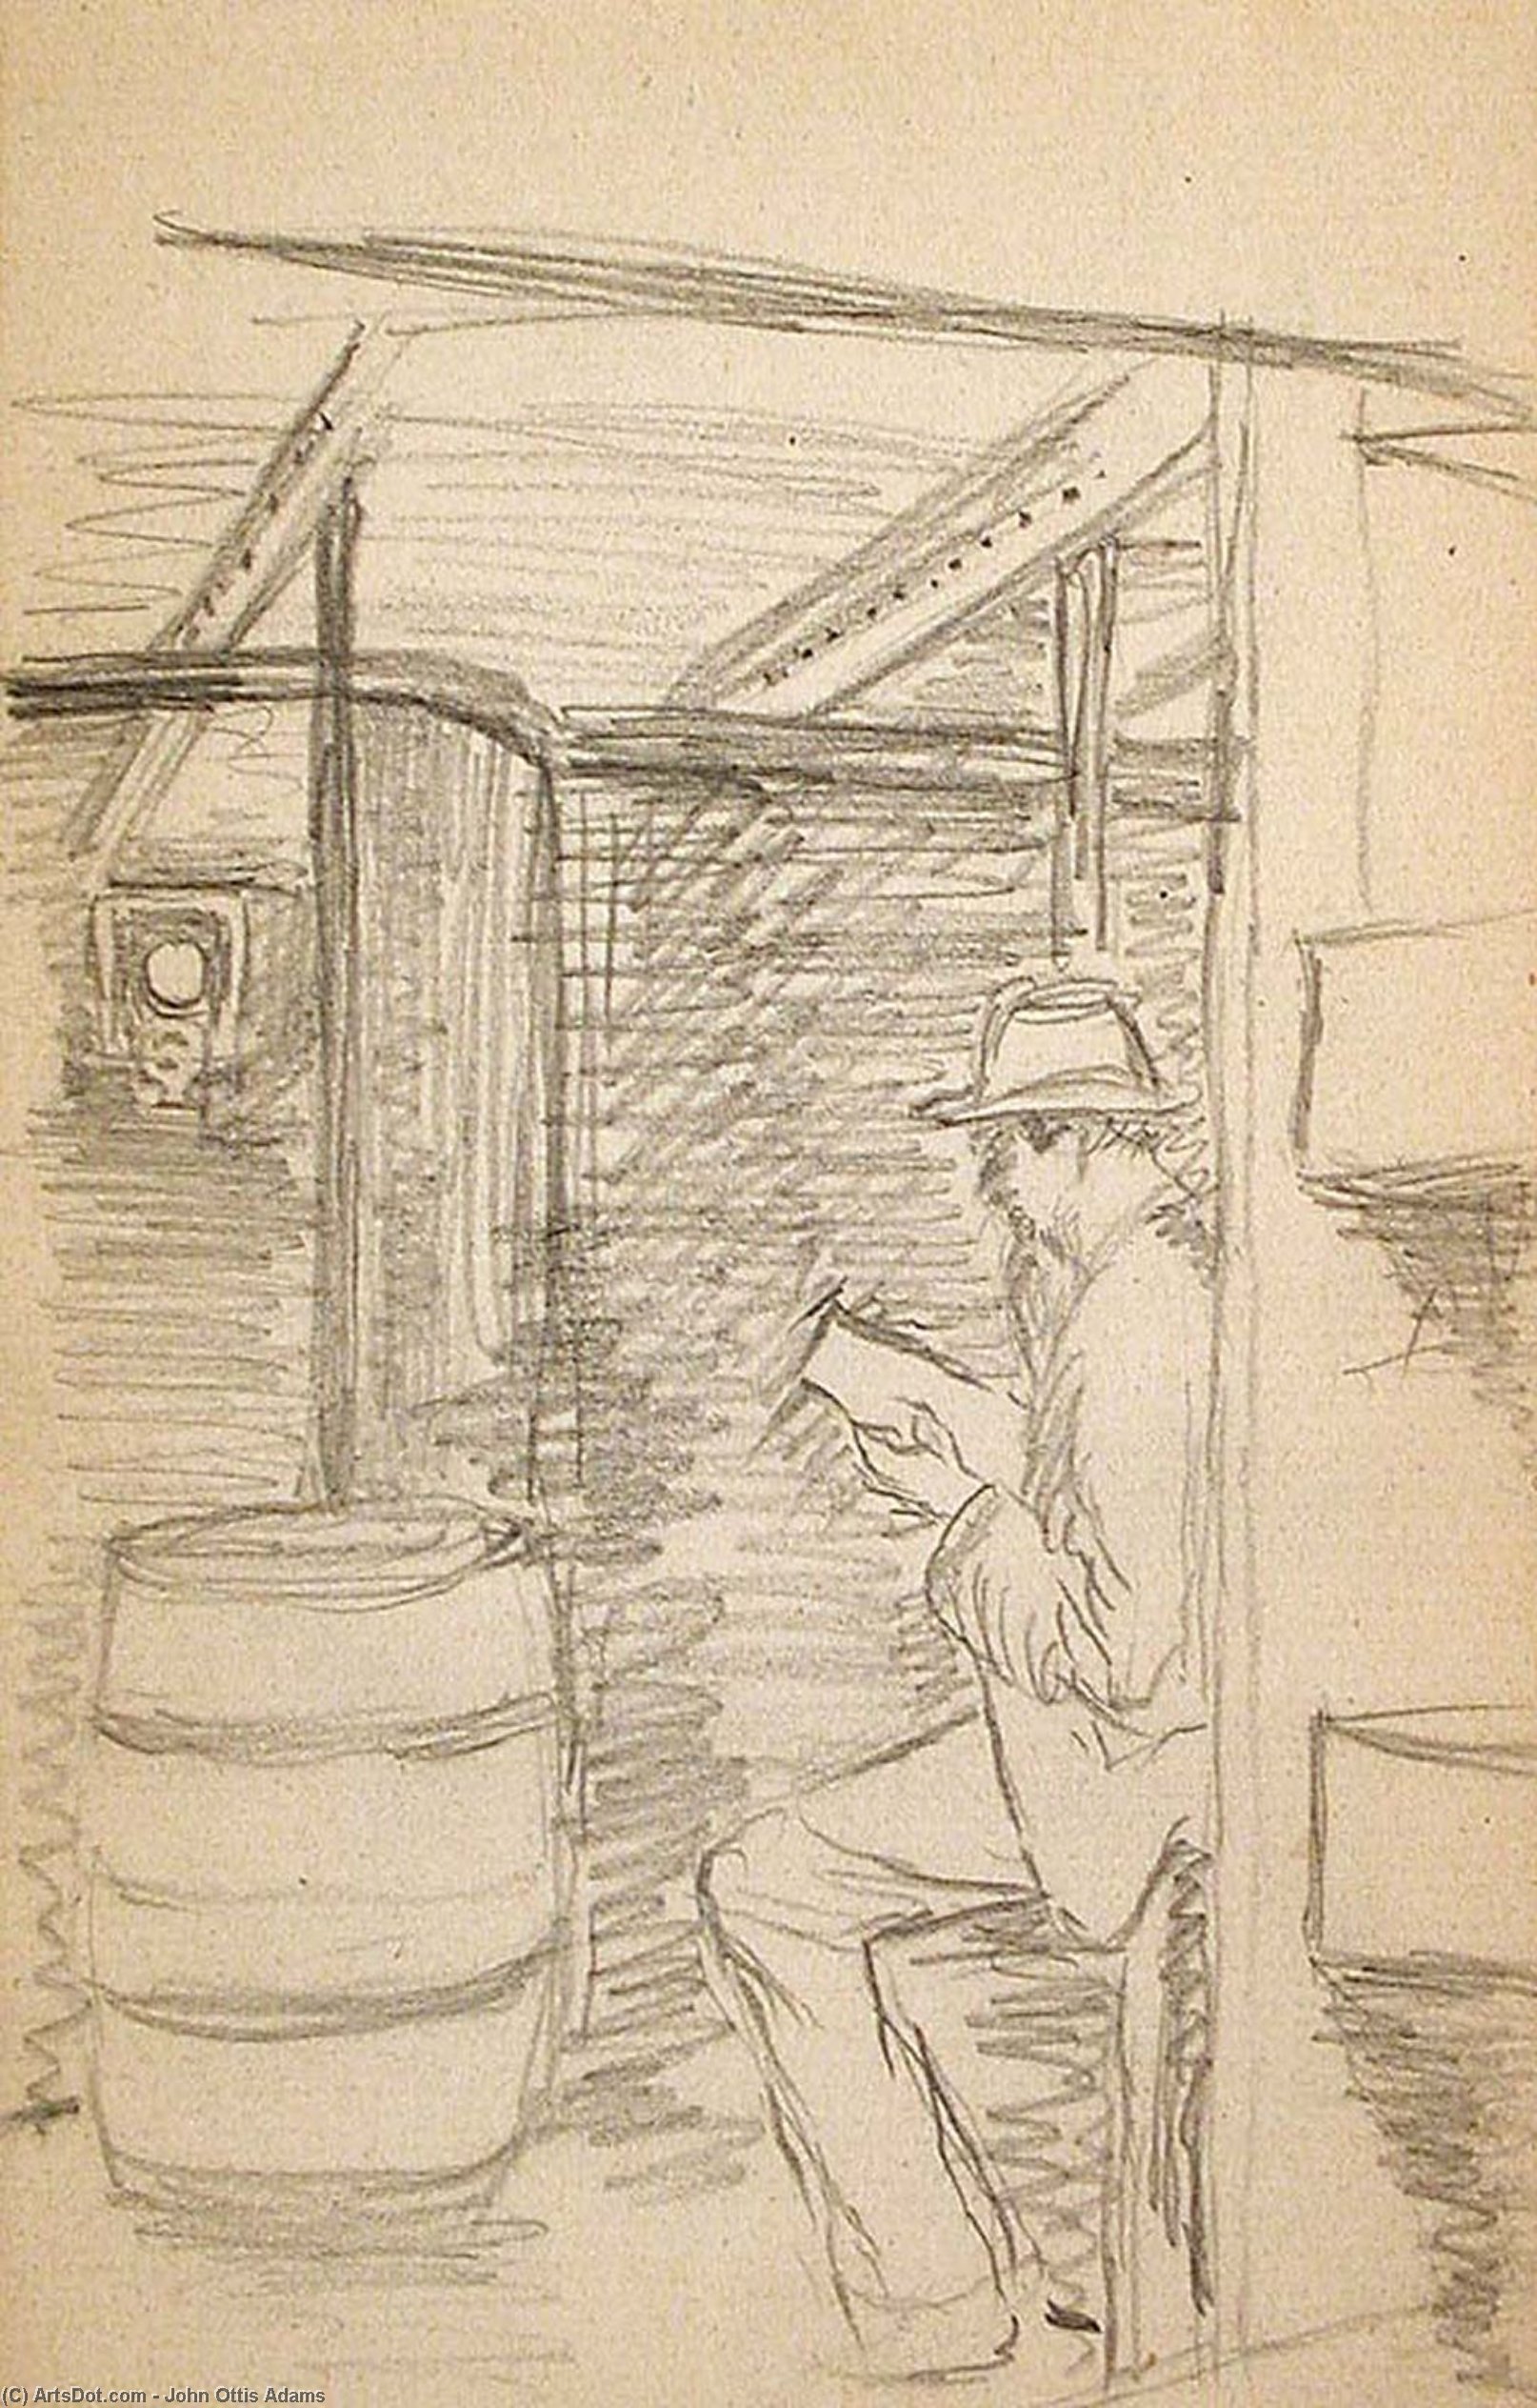 Wikioo.org - Bách khoa toàn thư về mỹ thuật - Vẽ tranh, Tác phẩm nghệ thuật John Ottis Adams - Man Reading in Ship's Cabin